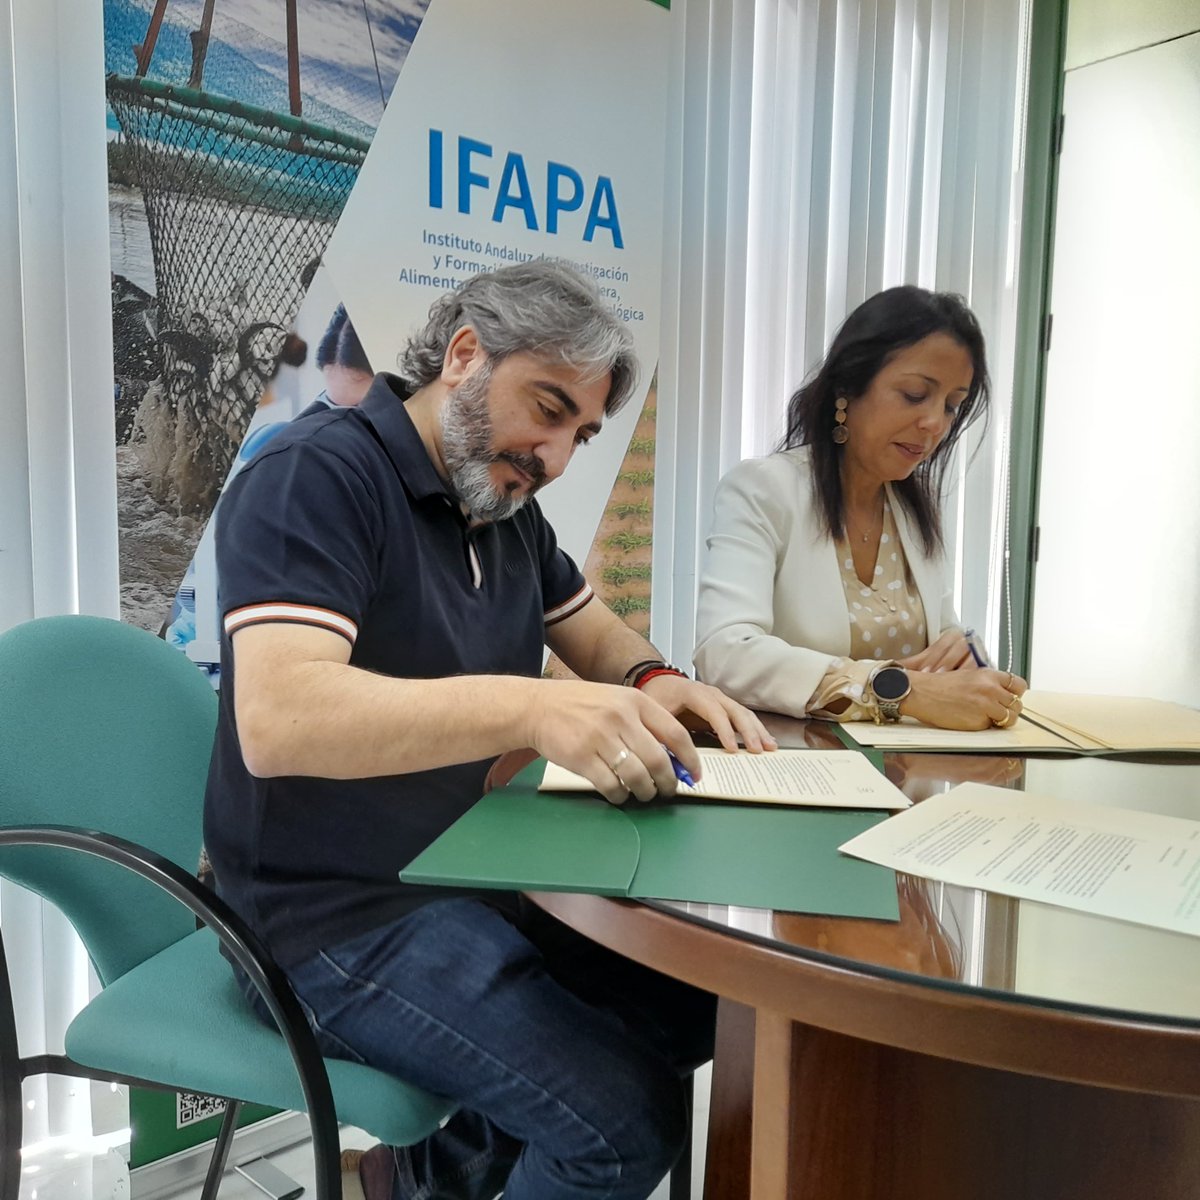 El #IFAPA y el chef Tony García acuerdan #innovar en el uso de frutas y hortalizas a través de la #gastronomía🧑‍🍳

Se proponen colaborar para impulsar la #cocina de cultivos novedosos y elaboraciones alimentarias saludables🍽️

🔗Lee la noticia en: lajunta.es/4qviy